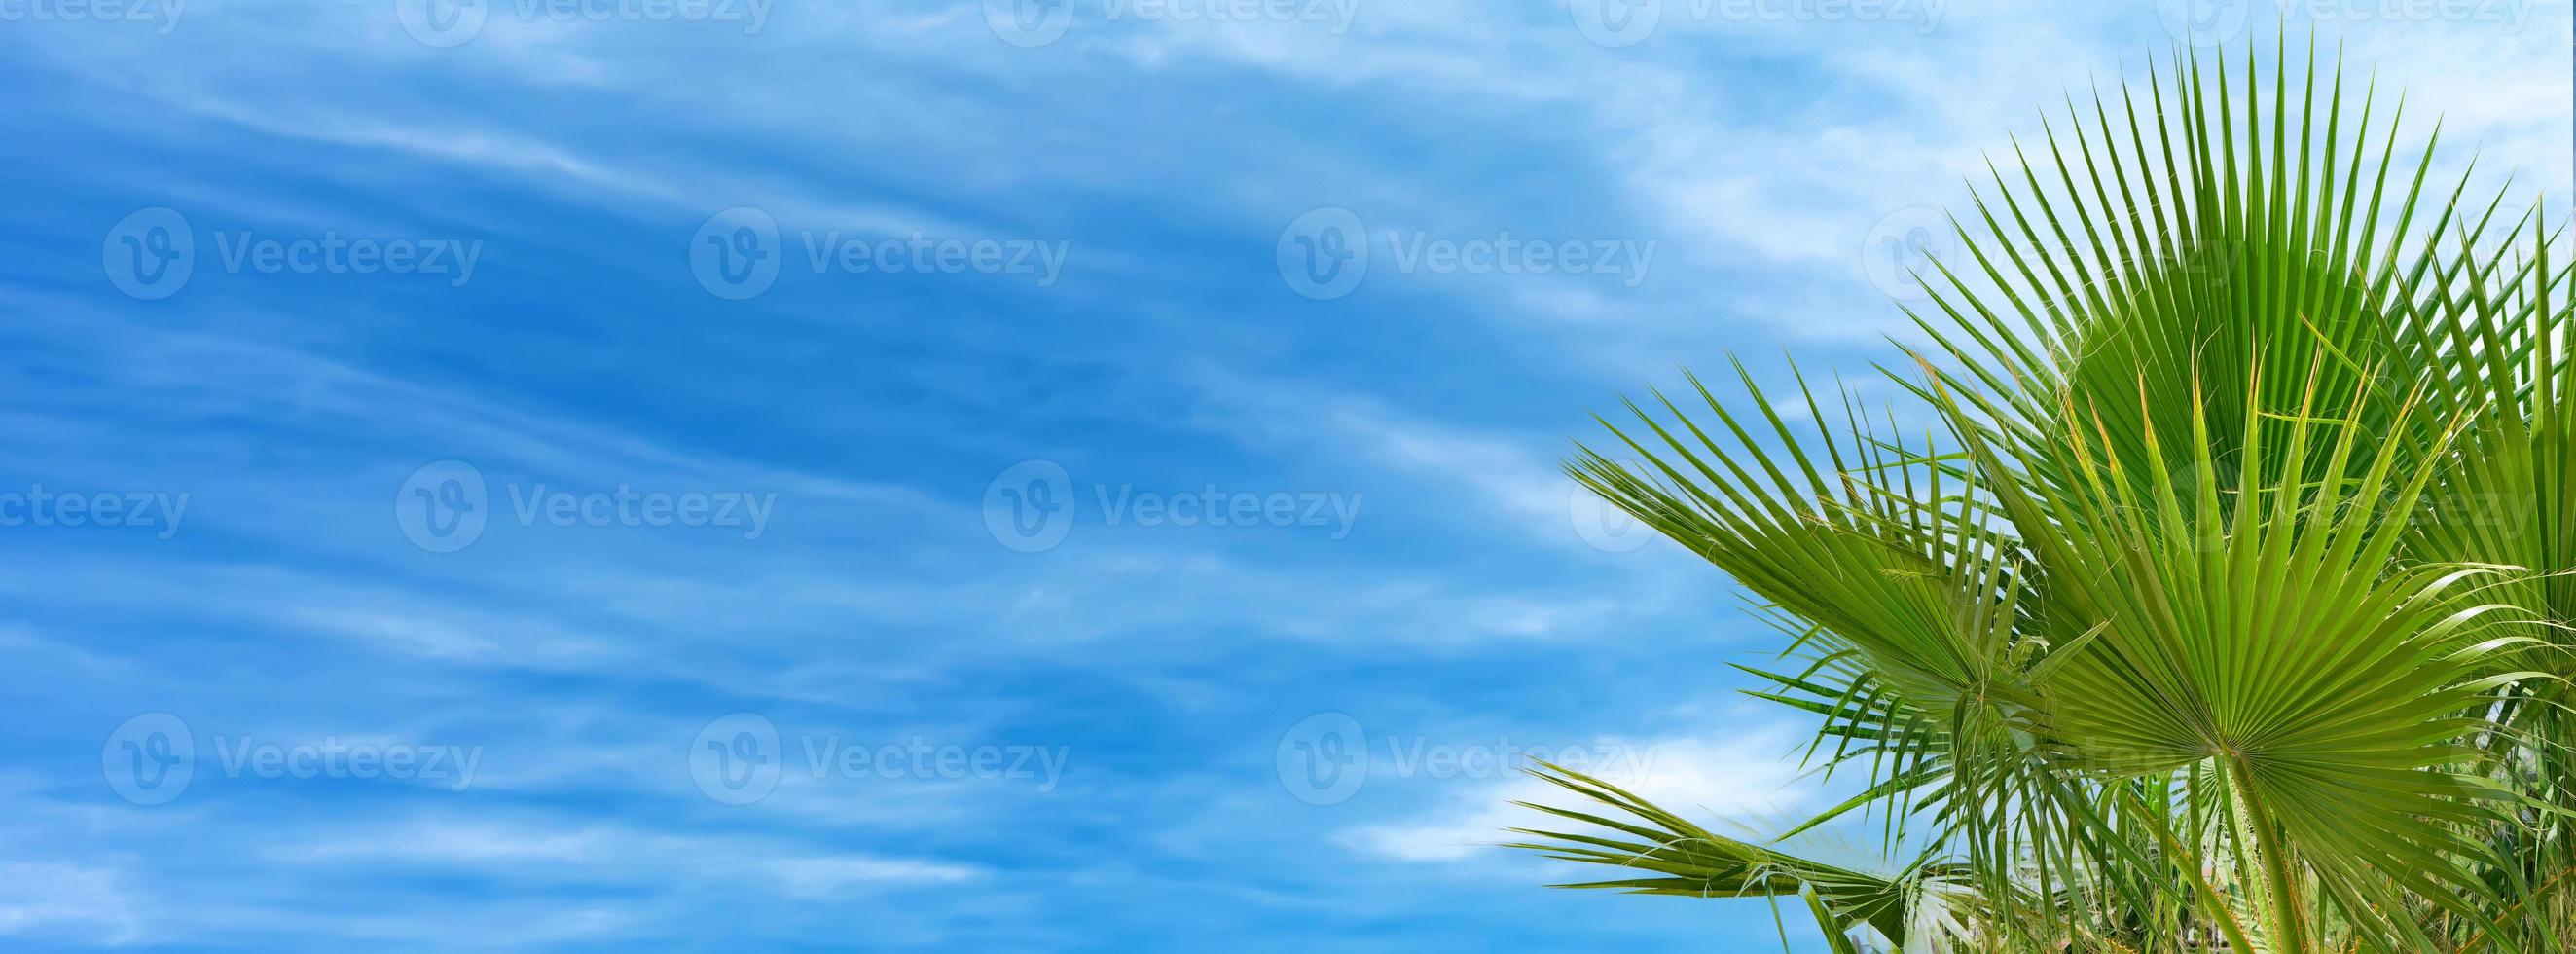 banner com folhas de palmeira contra céu azul nublado, fundo tropical. foto